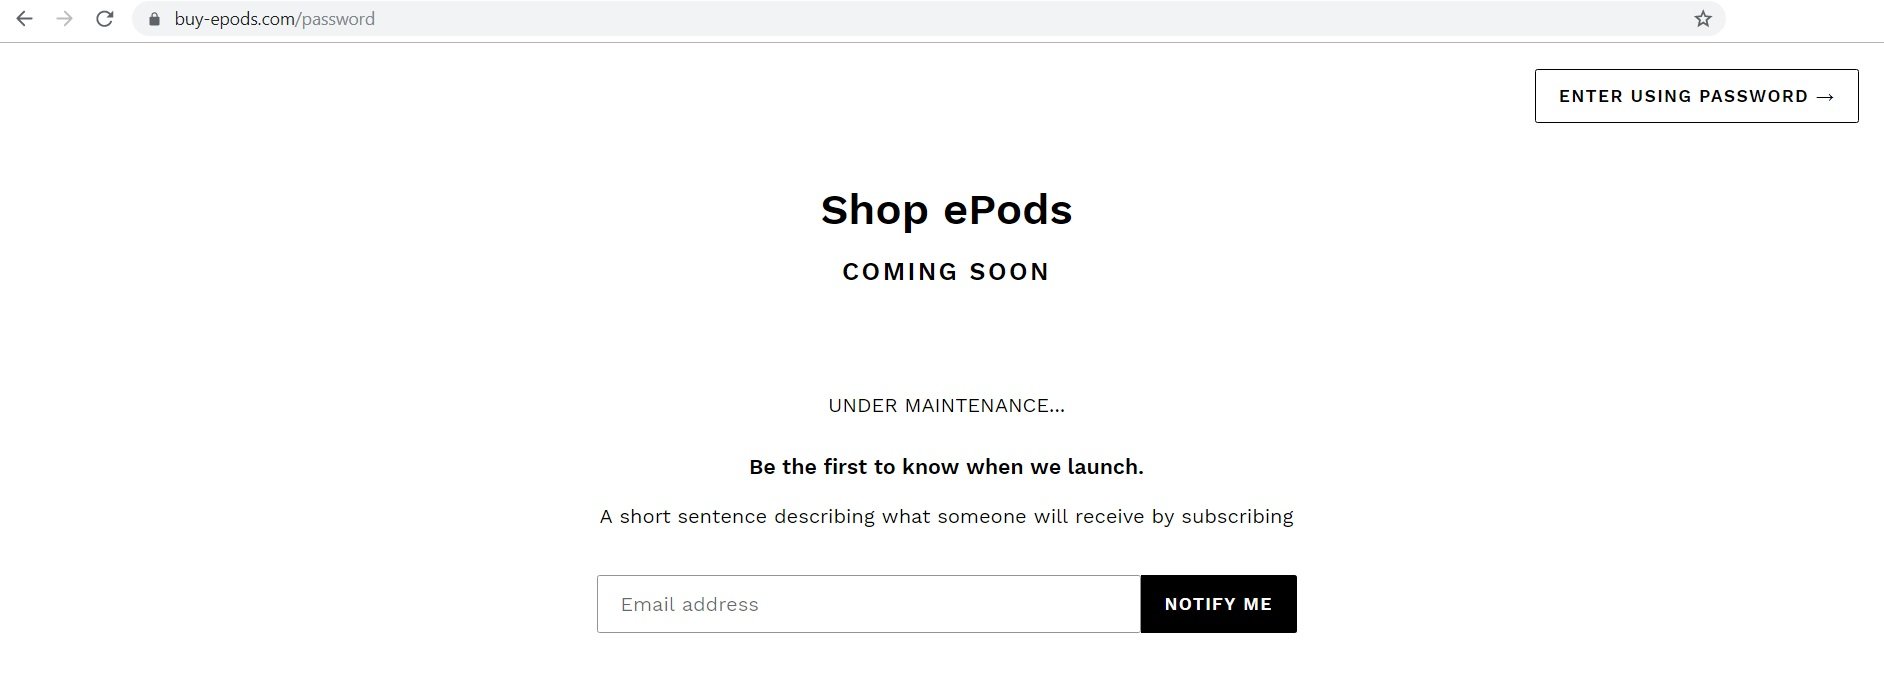 Shop ePods at shop-epods.com